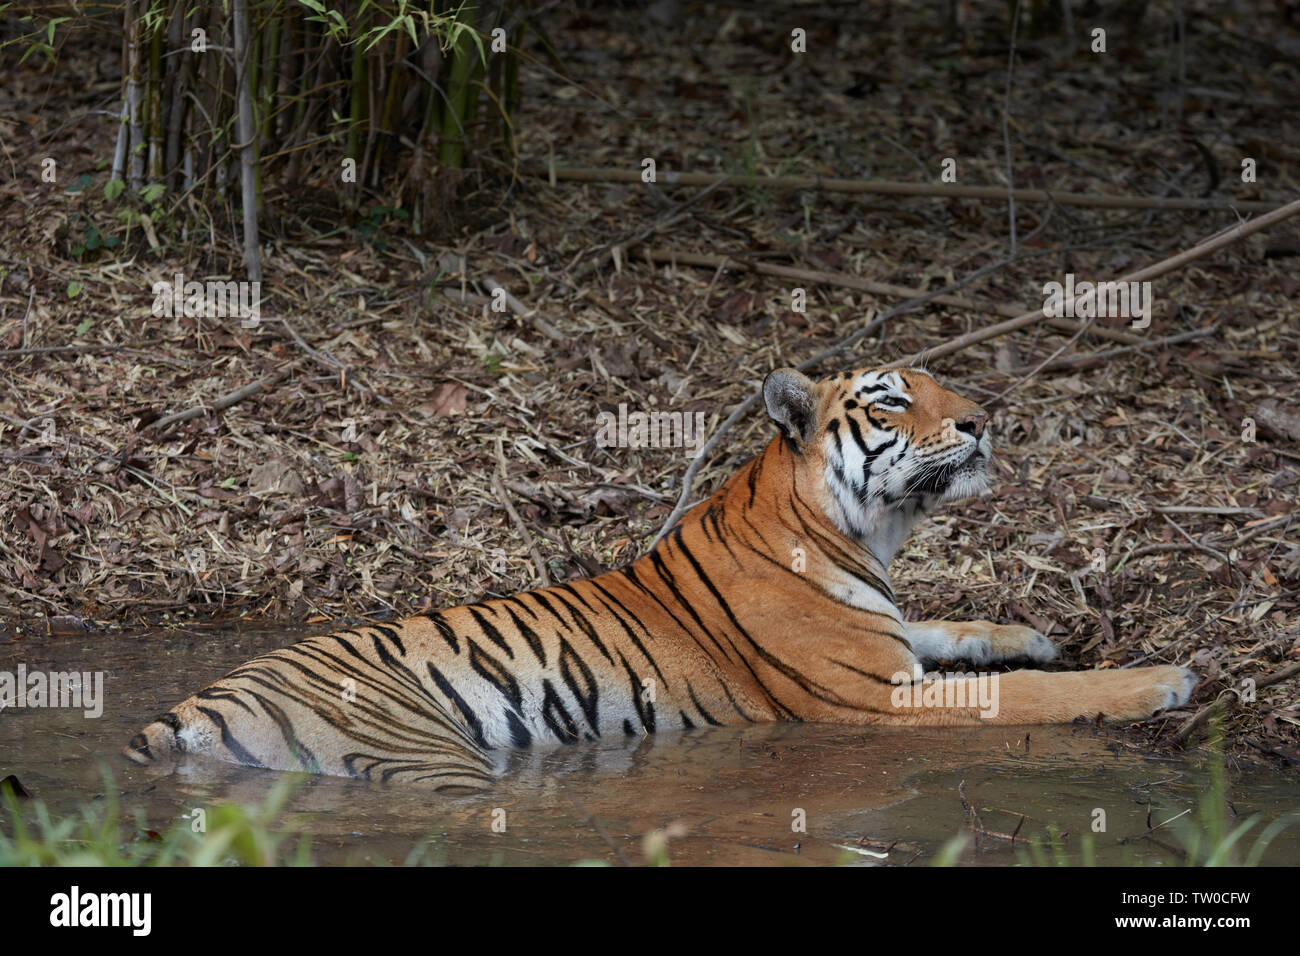 Bengal Tigress Maya at Tadoba forest, India. Stock Photo